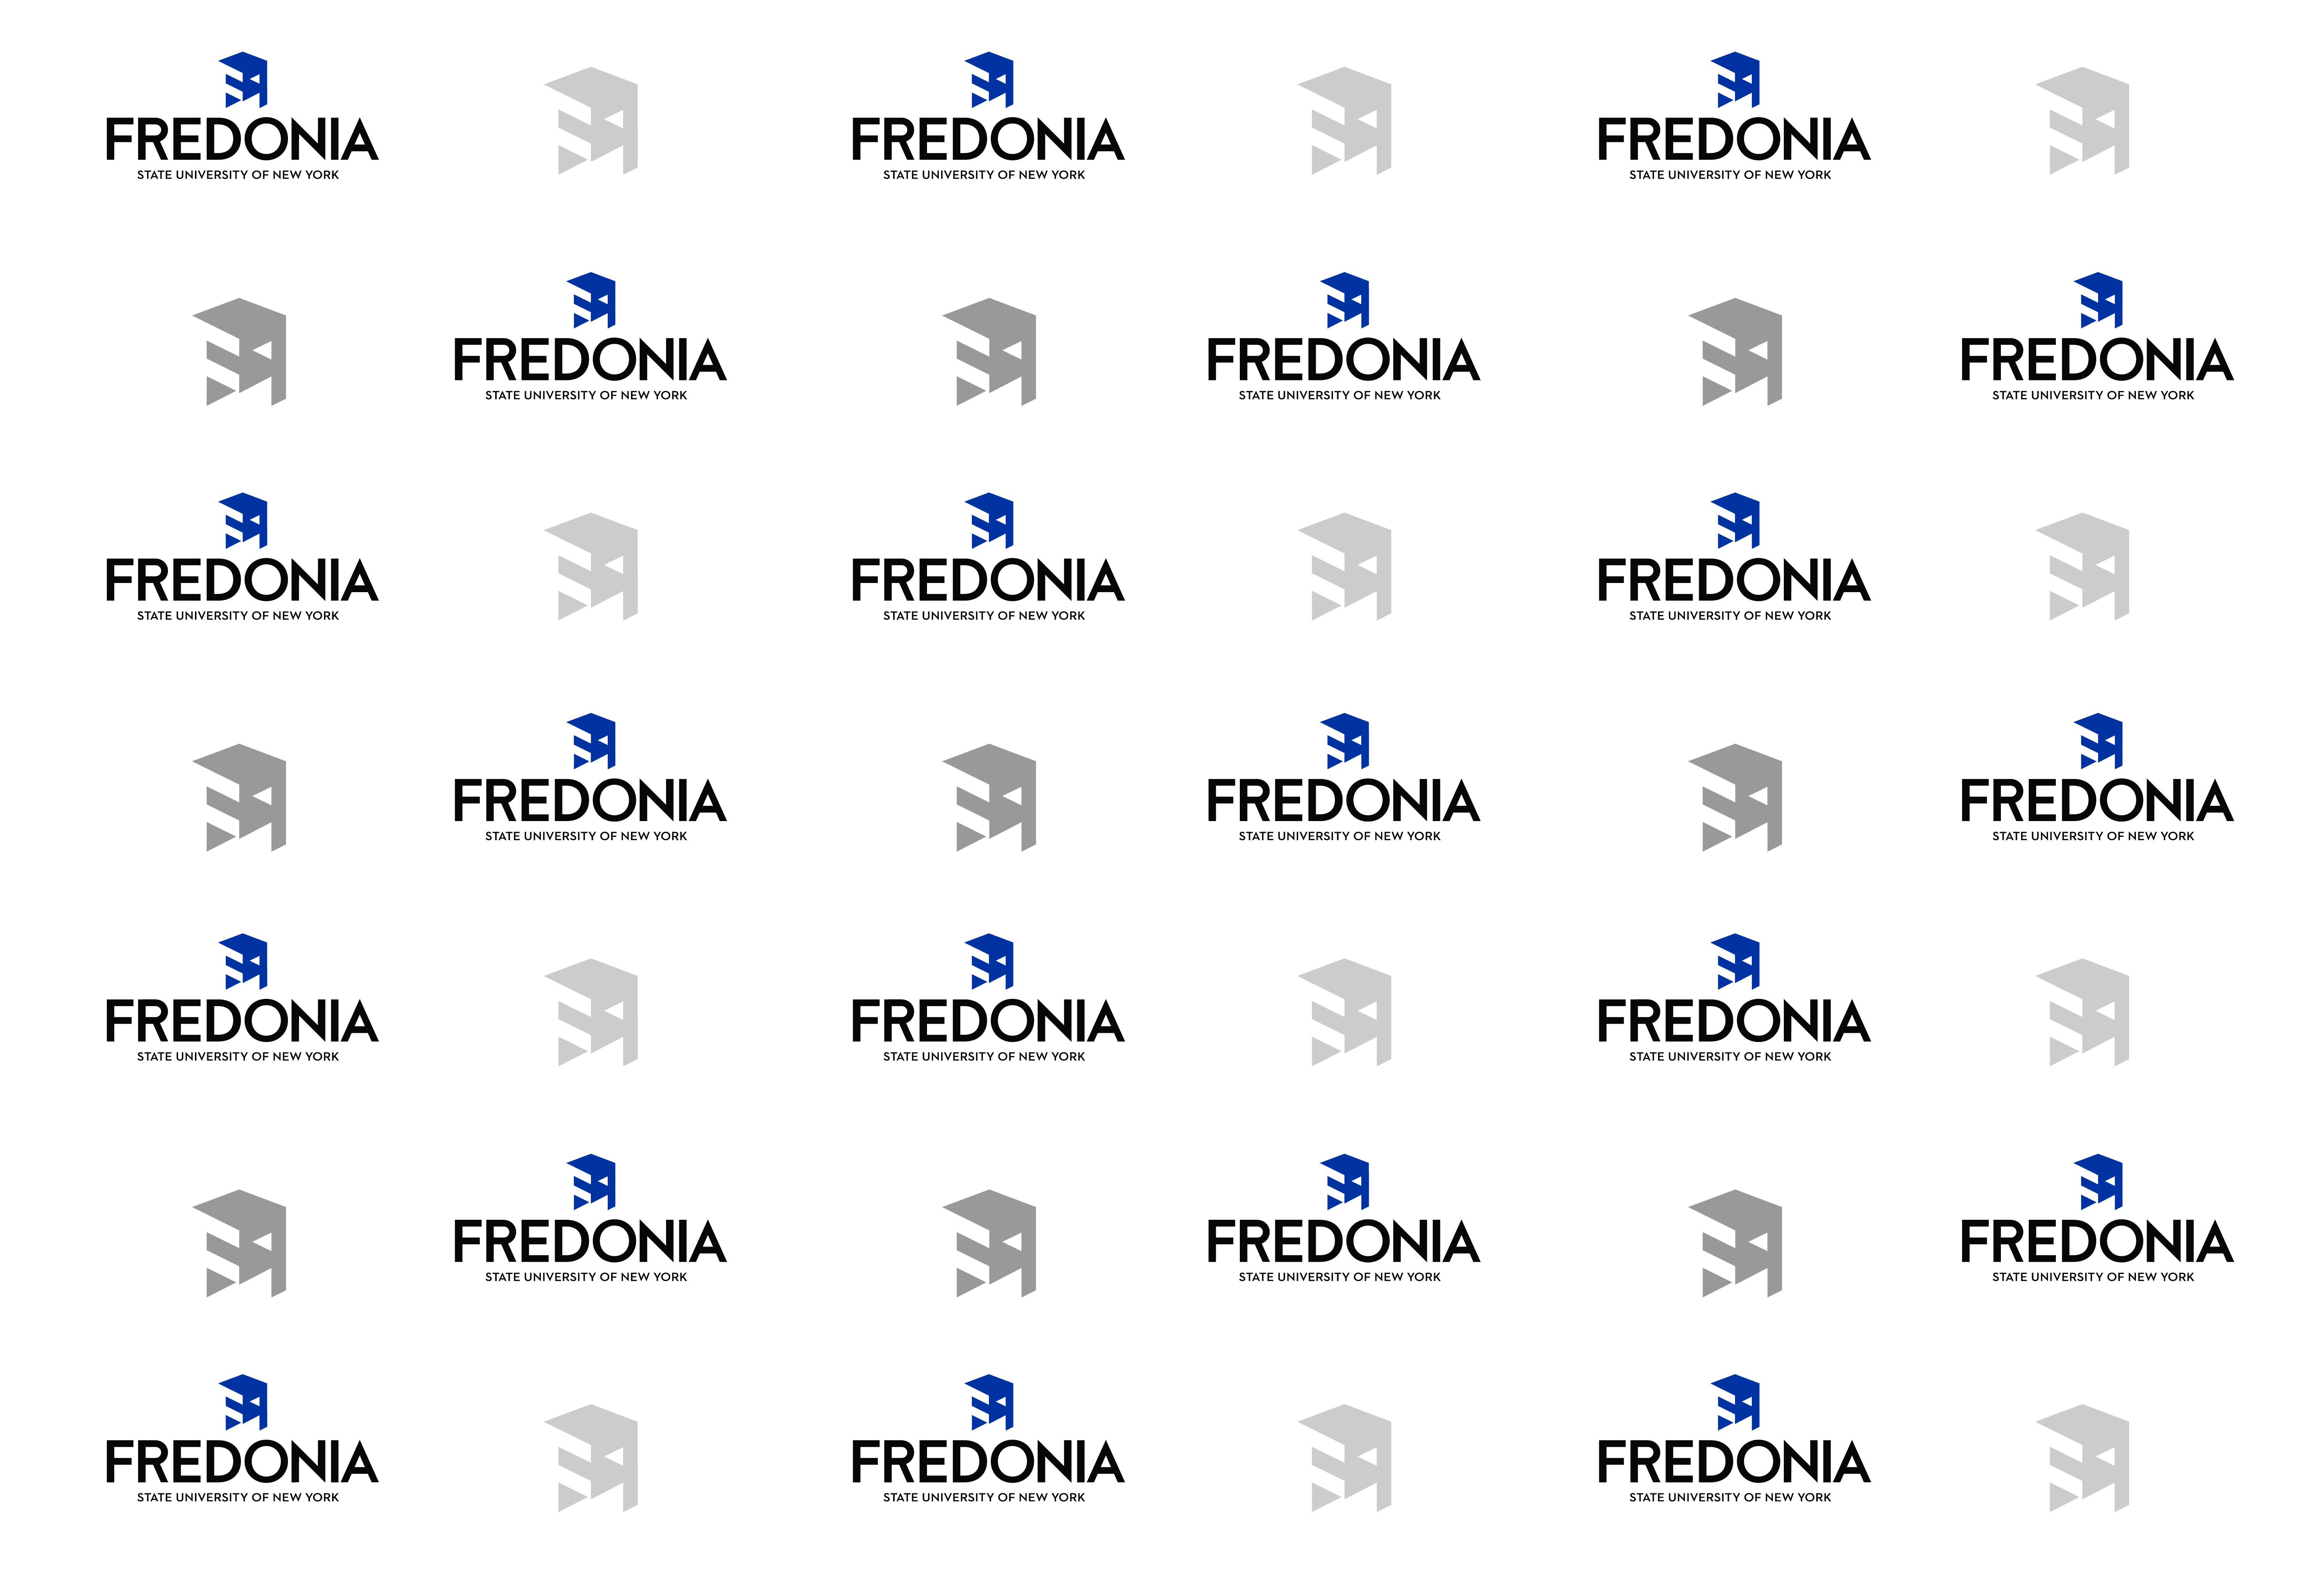 virtual background - Fredonia white